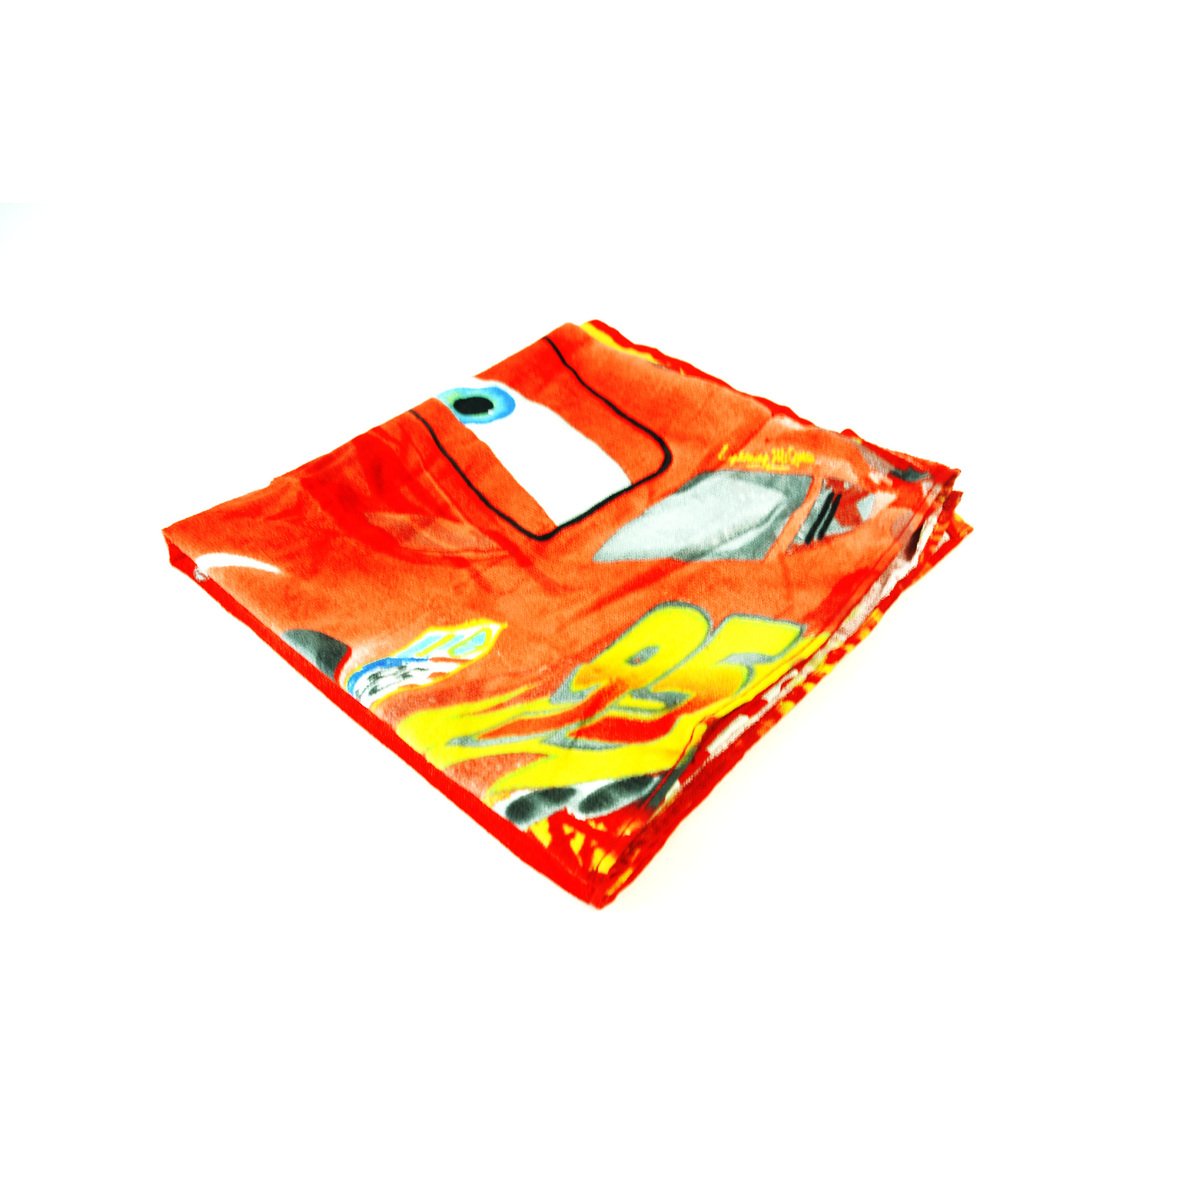 Disney Cars Lightning McQueen - Kids Beach Set - Button Bag, Sunglass, Towel and Cap NCW005